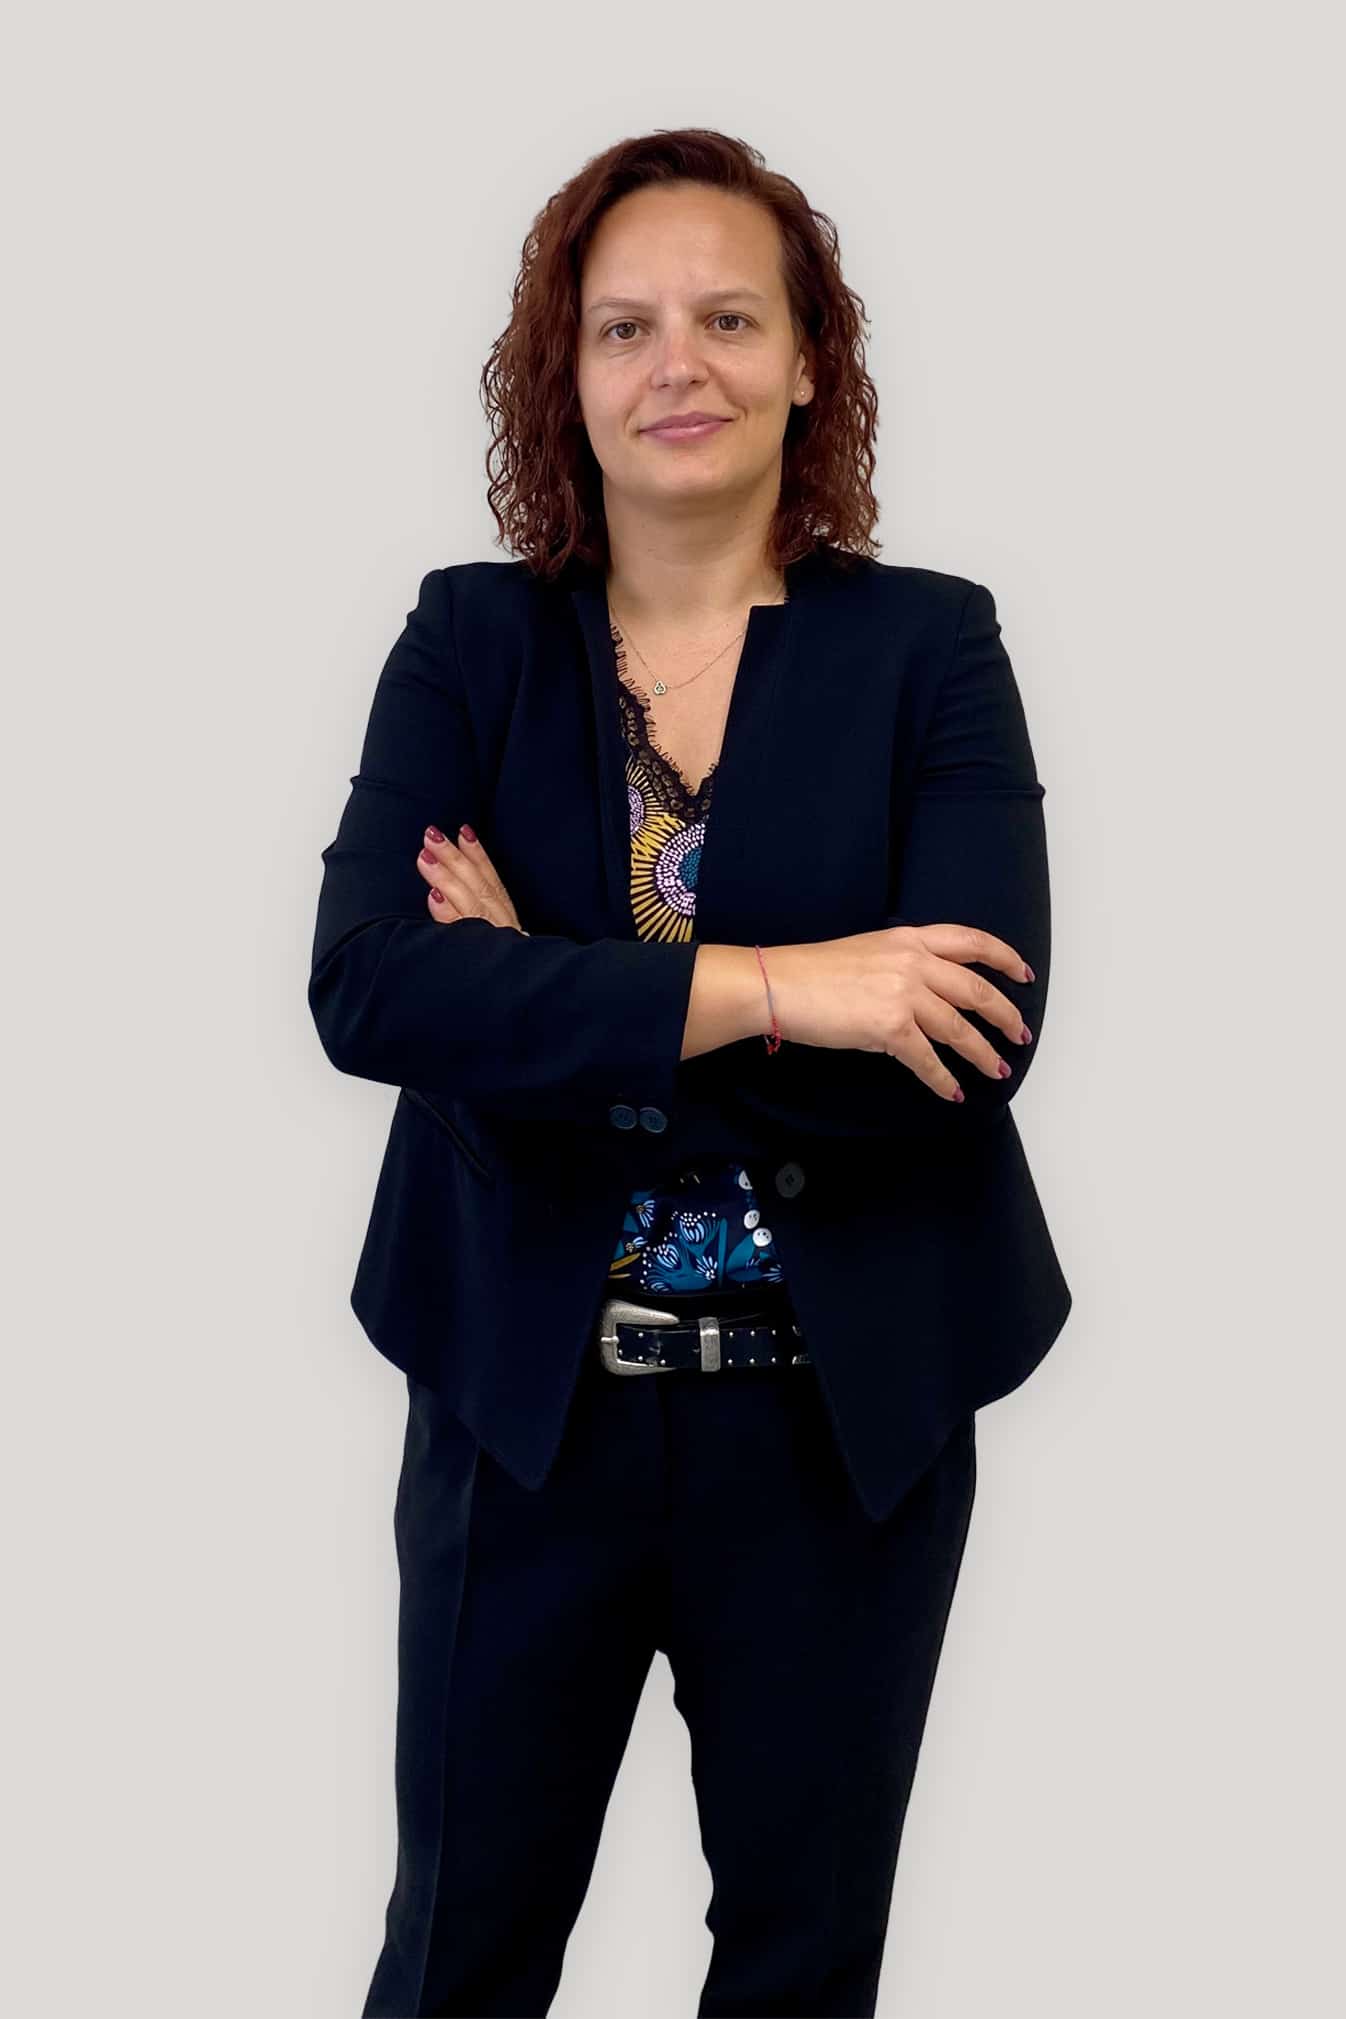 Eng. Chiara Magnani